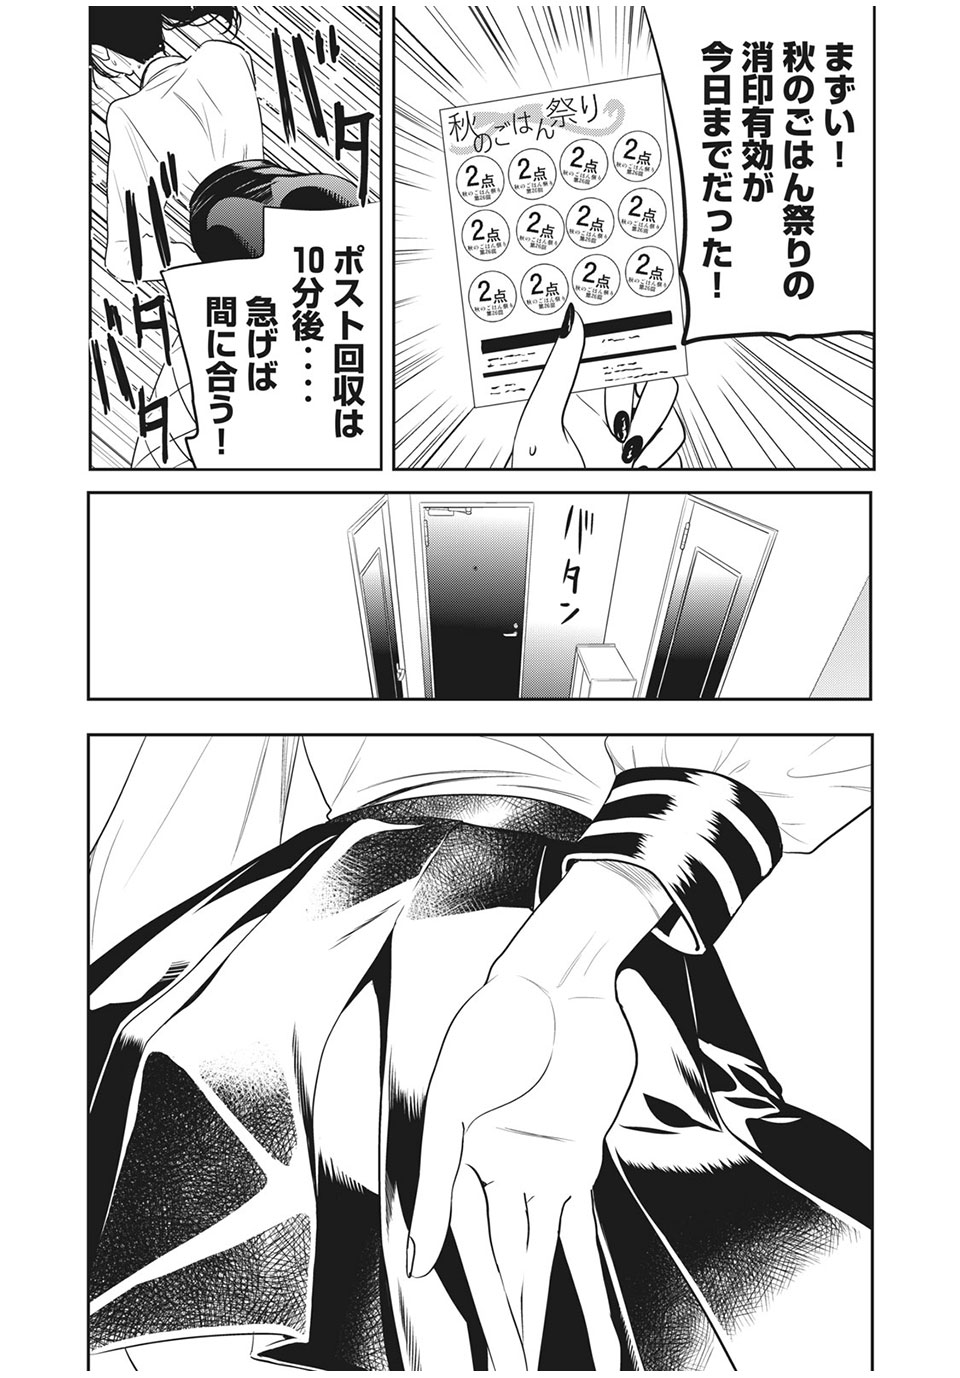 Eigo ×× Sensei - Chapter 23 - Page 2